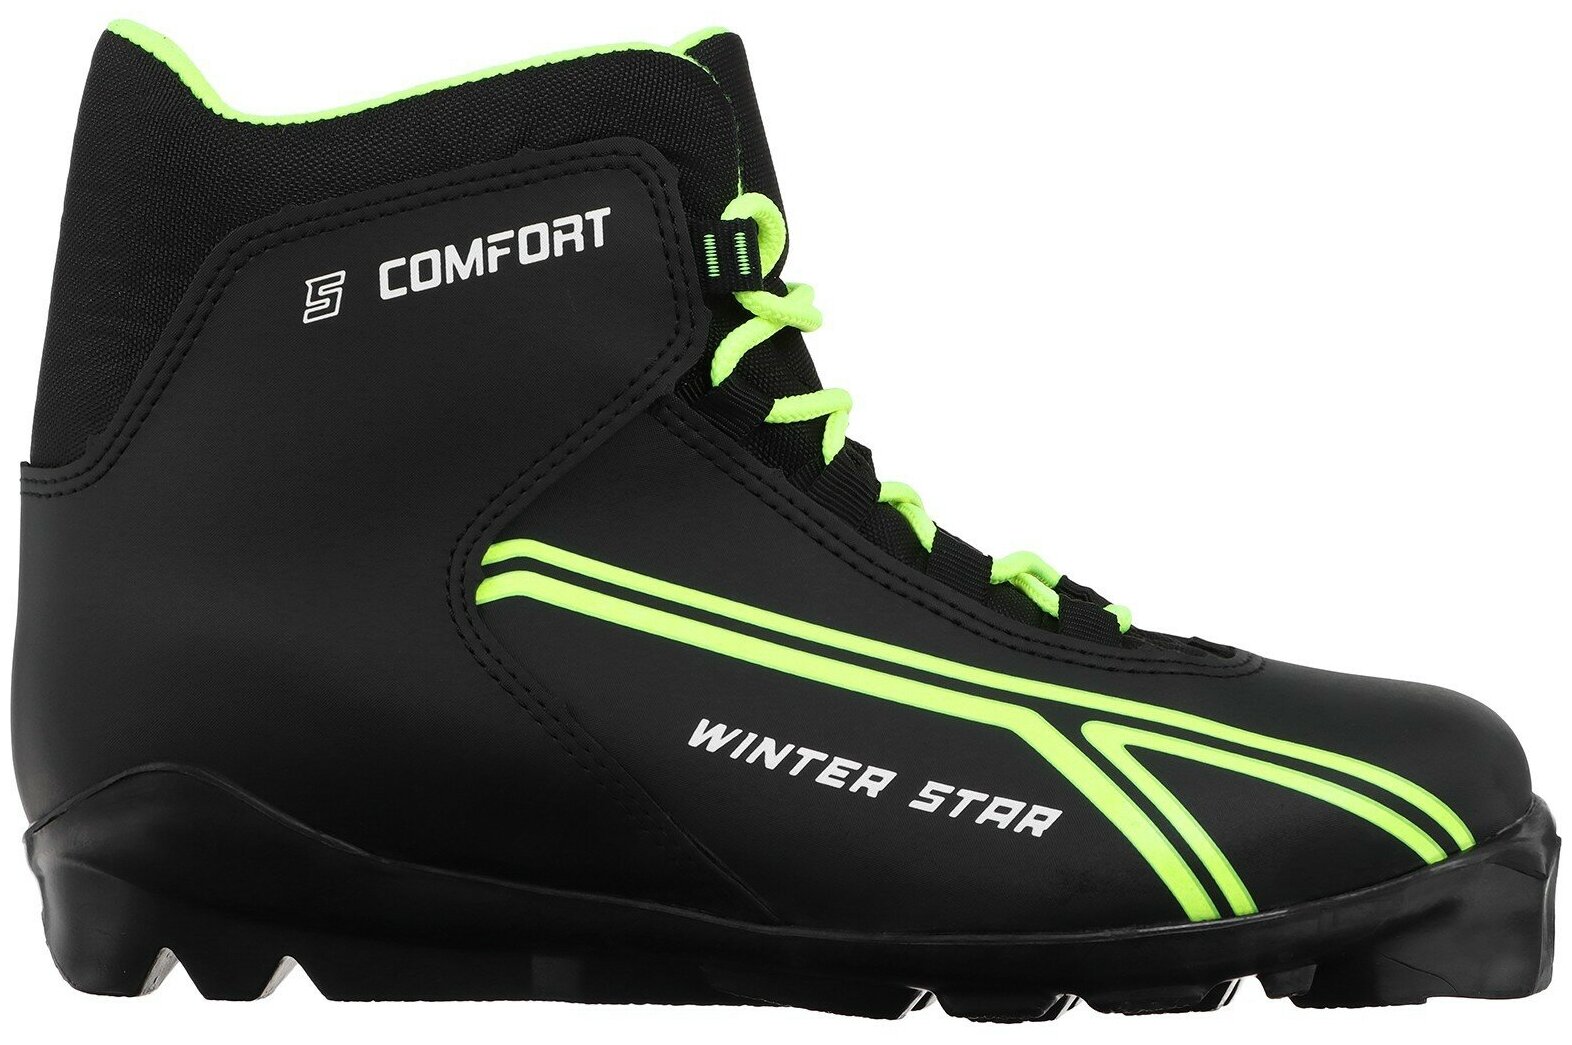 Ботинки лыжные Winter Star "Сomfort", SNS, искусственная кожа, размер 44, цвет чёрный, лайм-неон